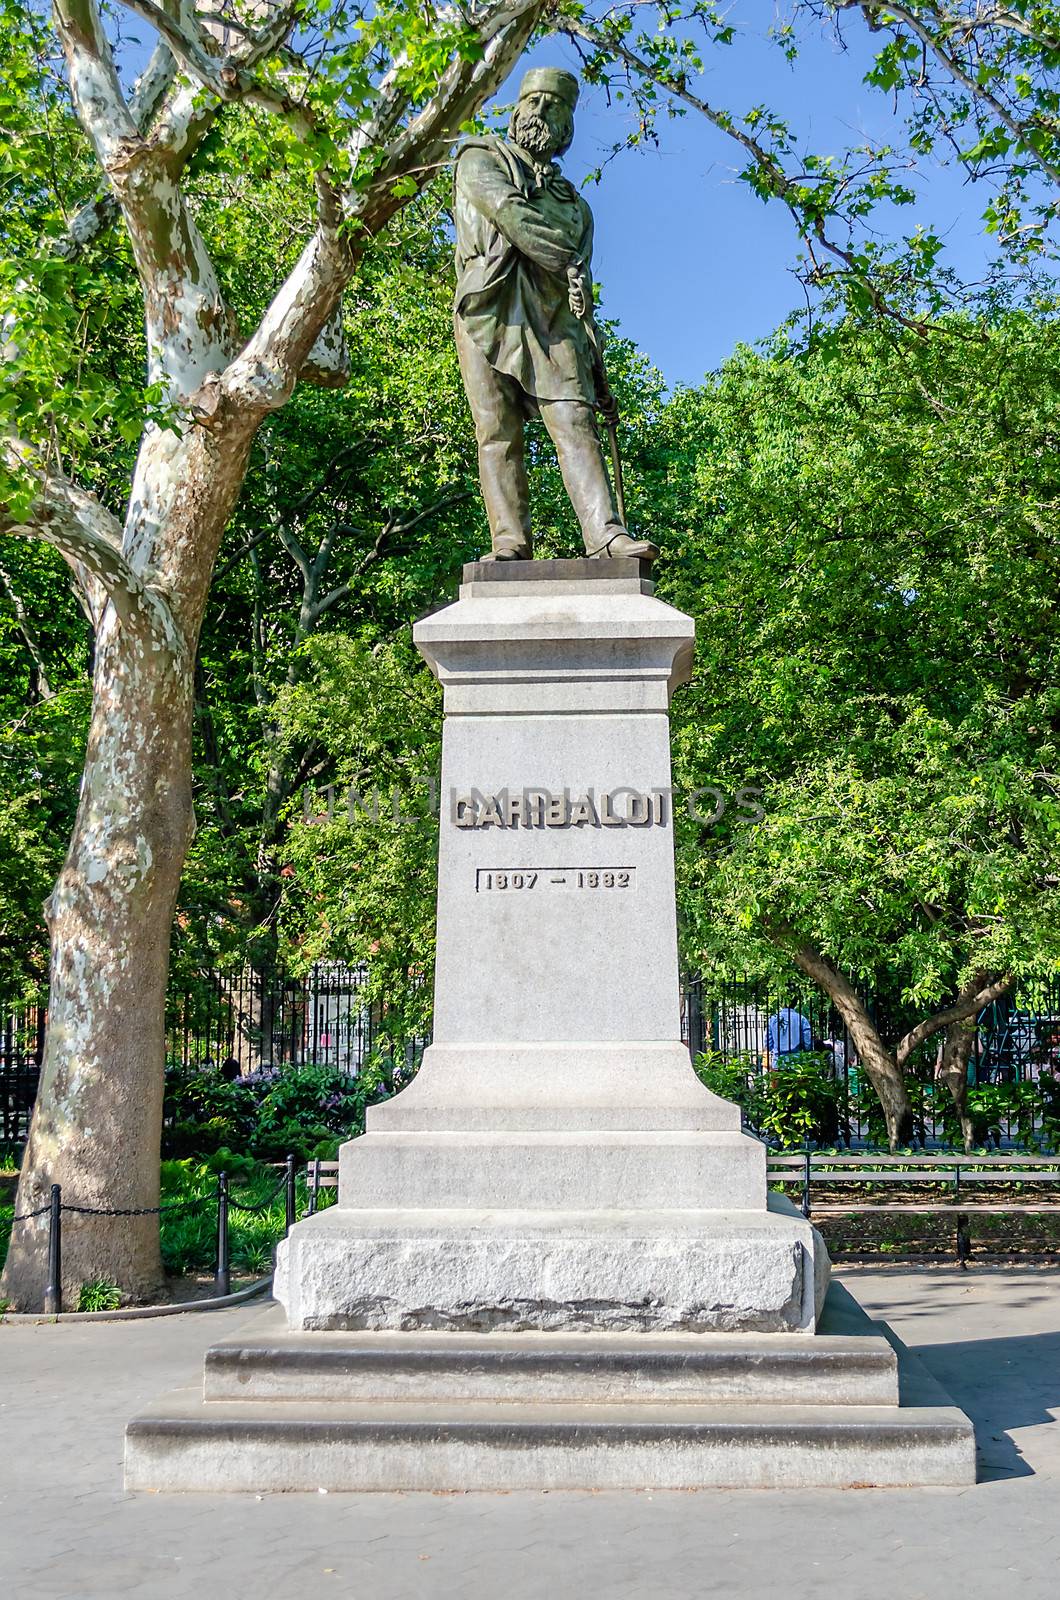 Monument to Garibaldi, Washington Square, New York by marcorubino